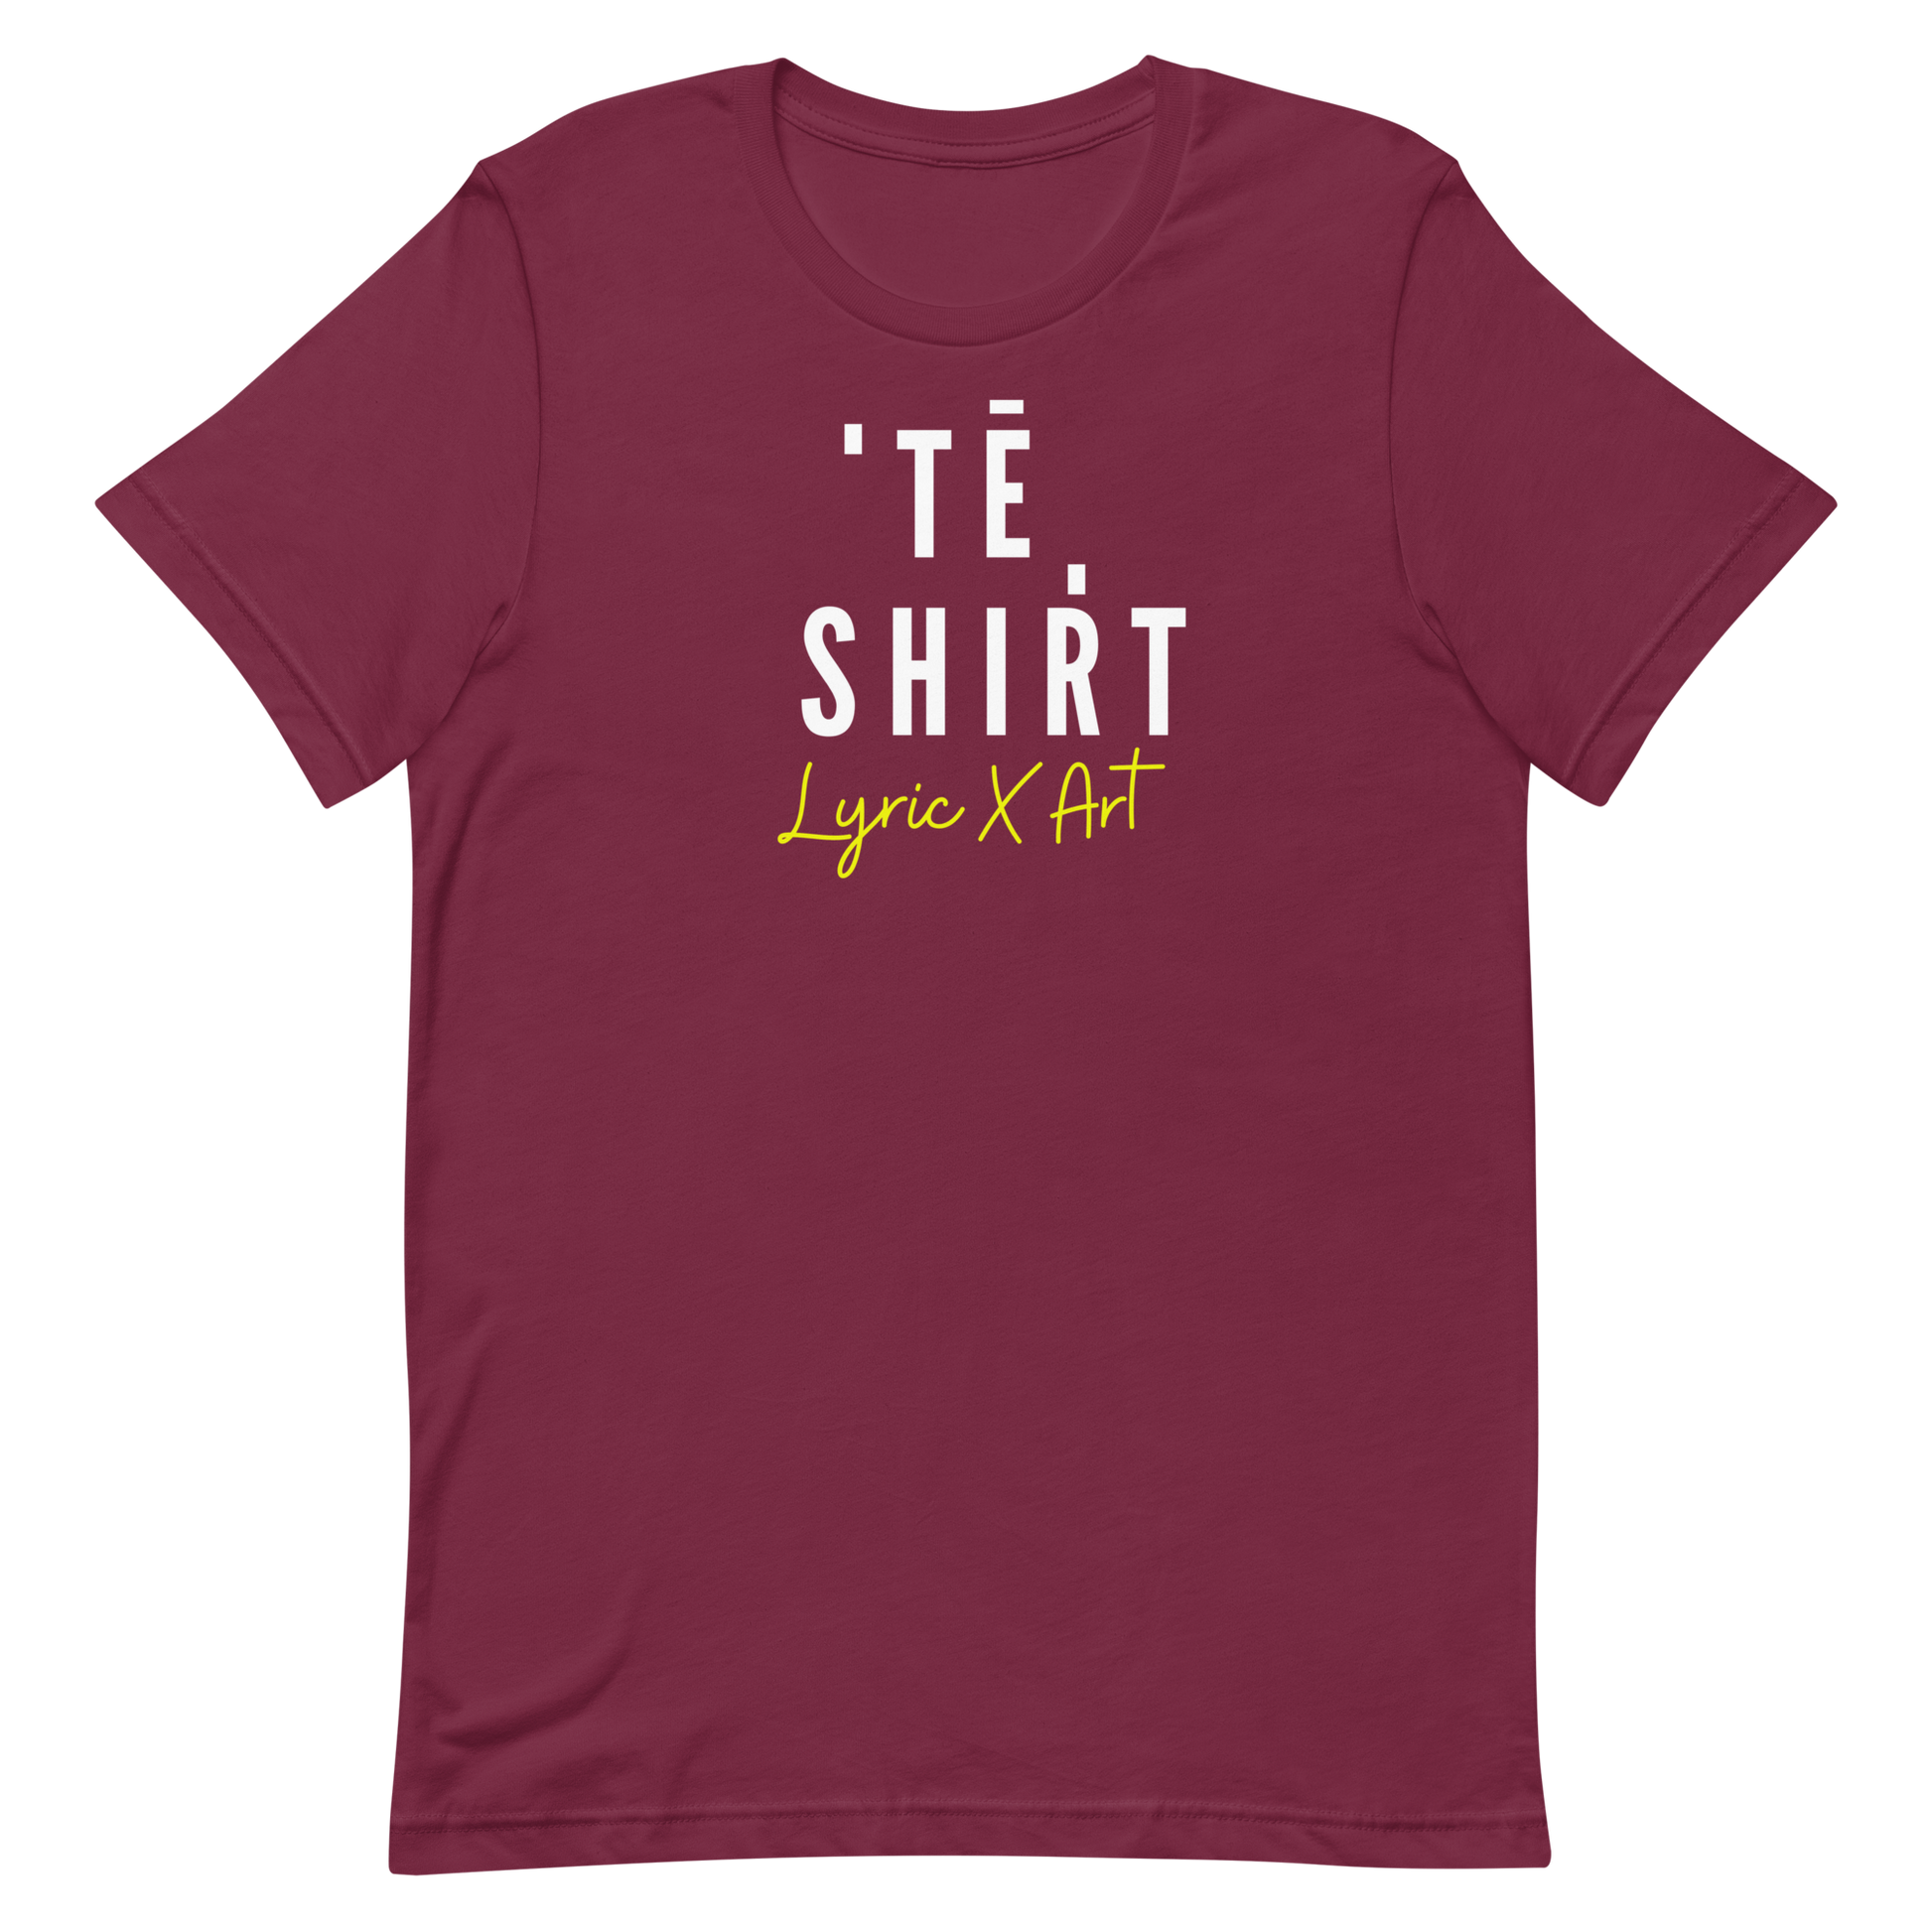 A T - Shirt - lyricxart